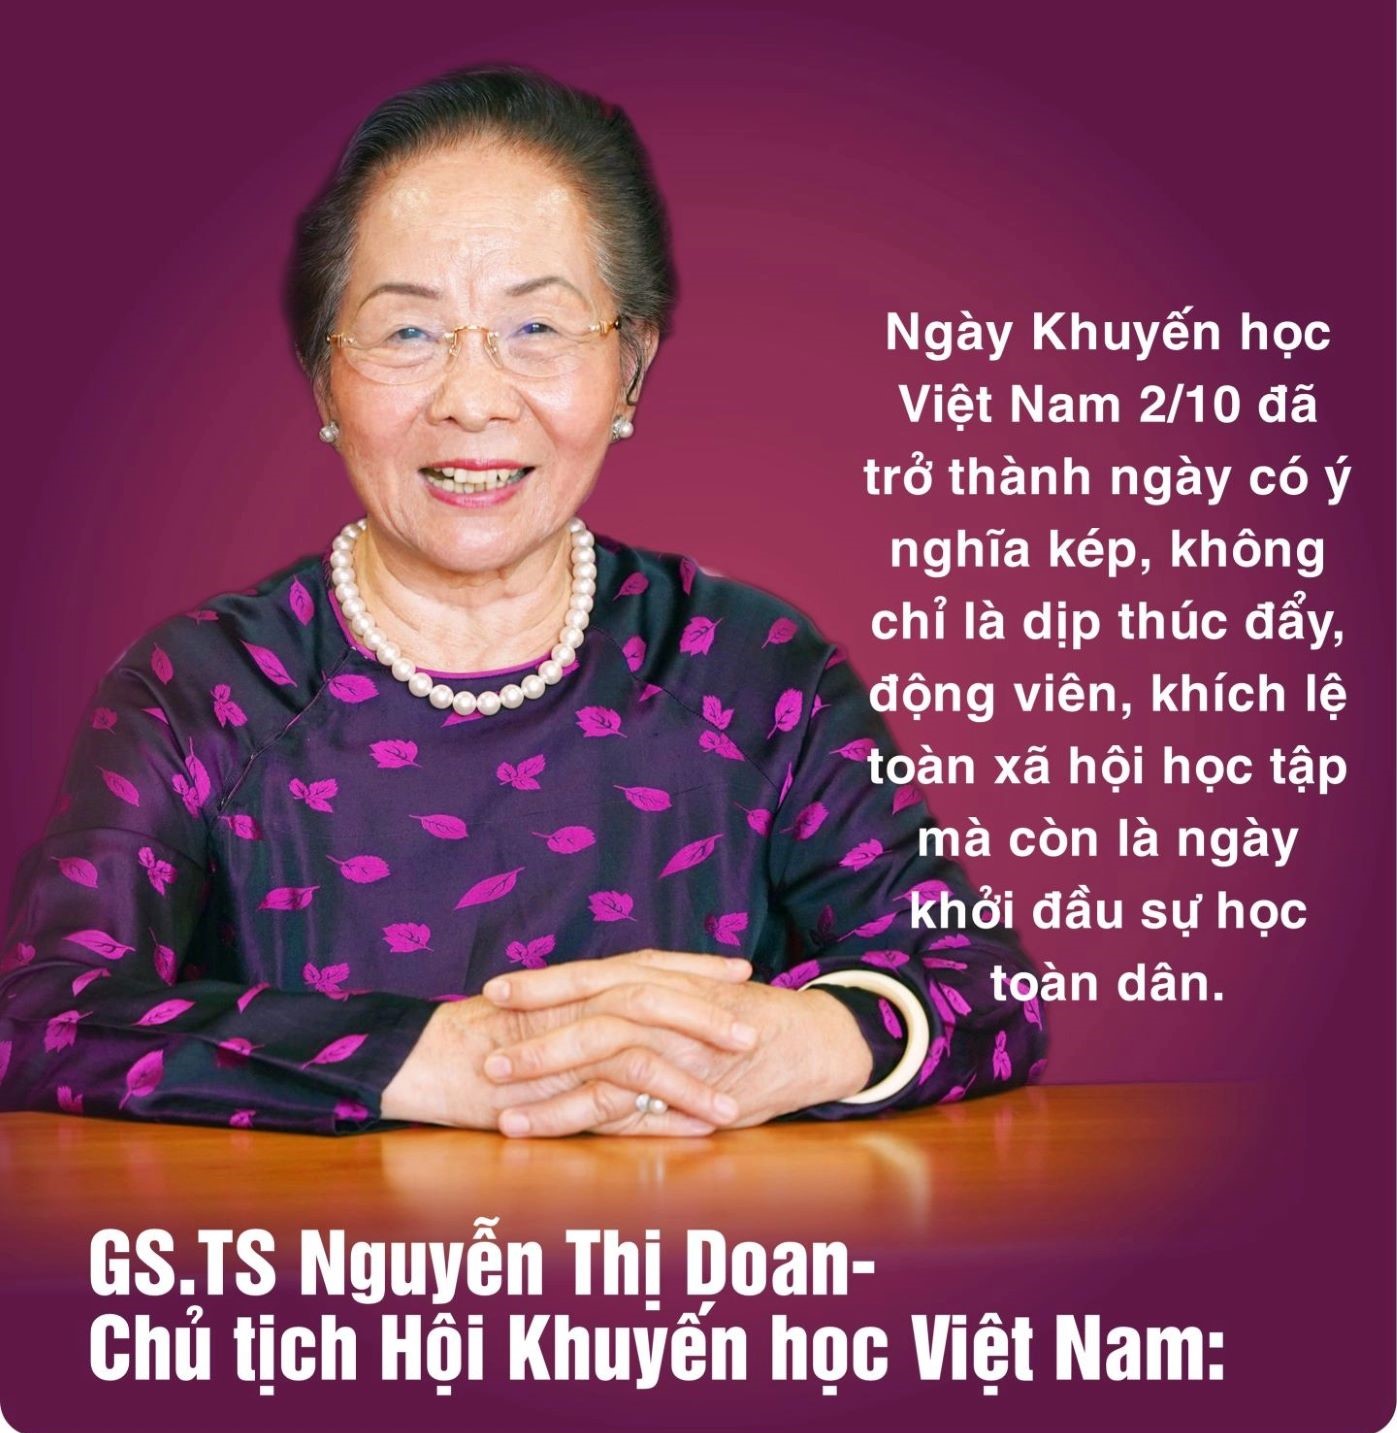 GS.TS Nguyễn Thị Doan: Khuyến học mở con đường tri thức đến tương lai